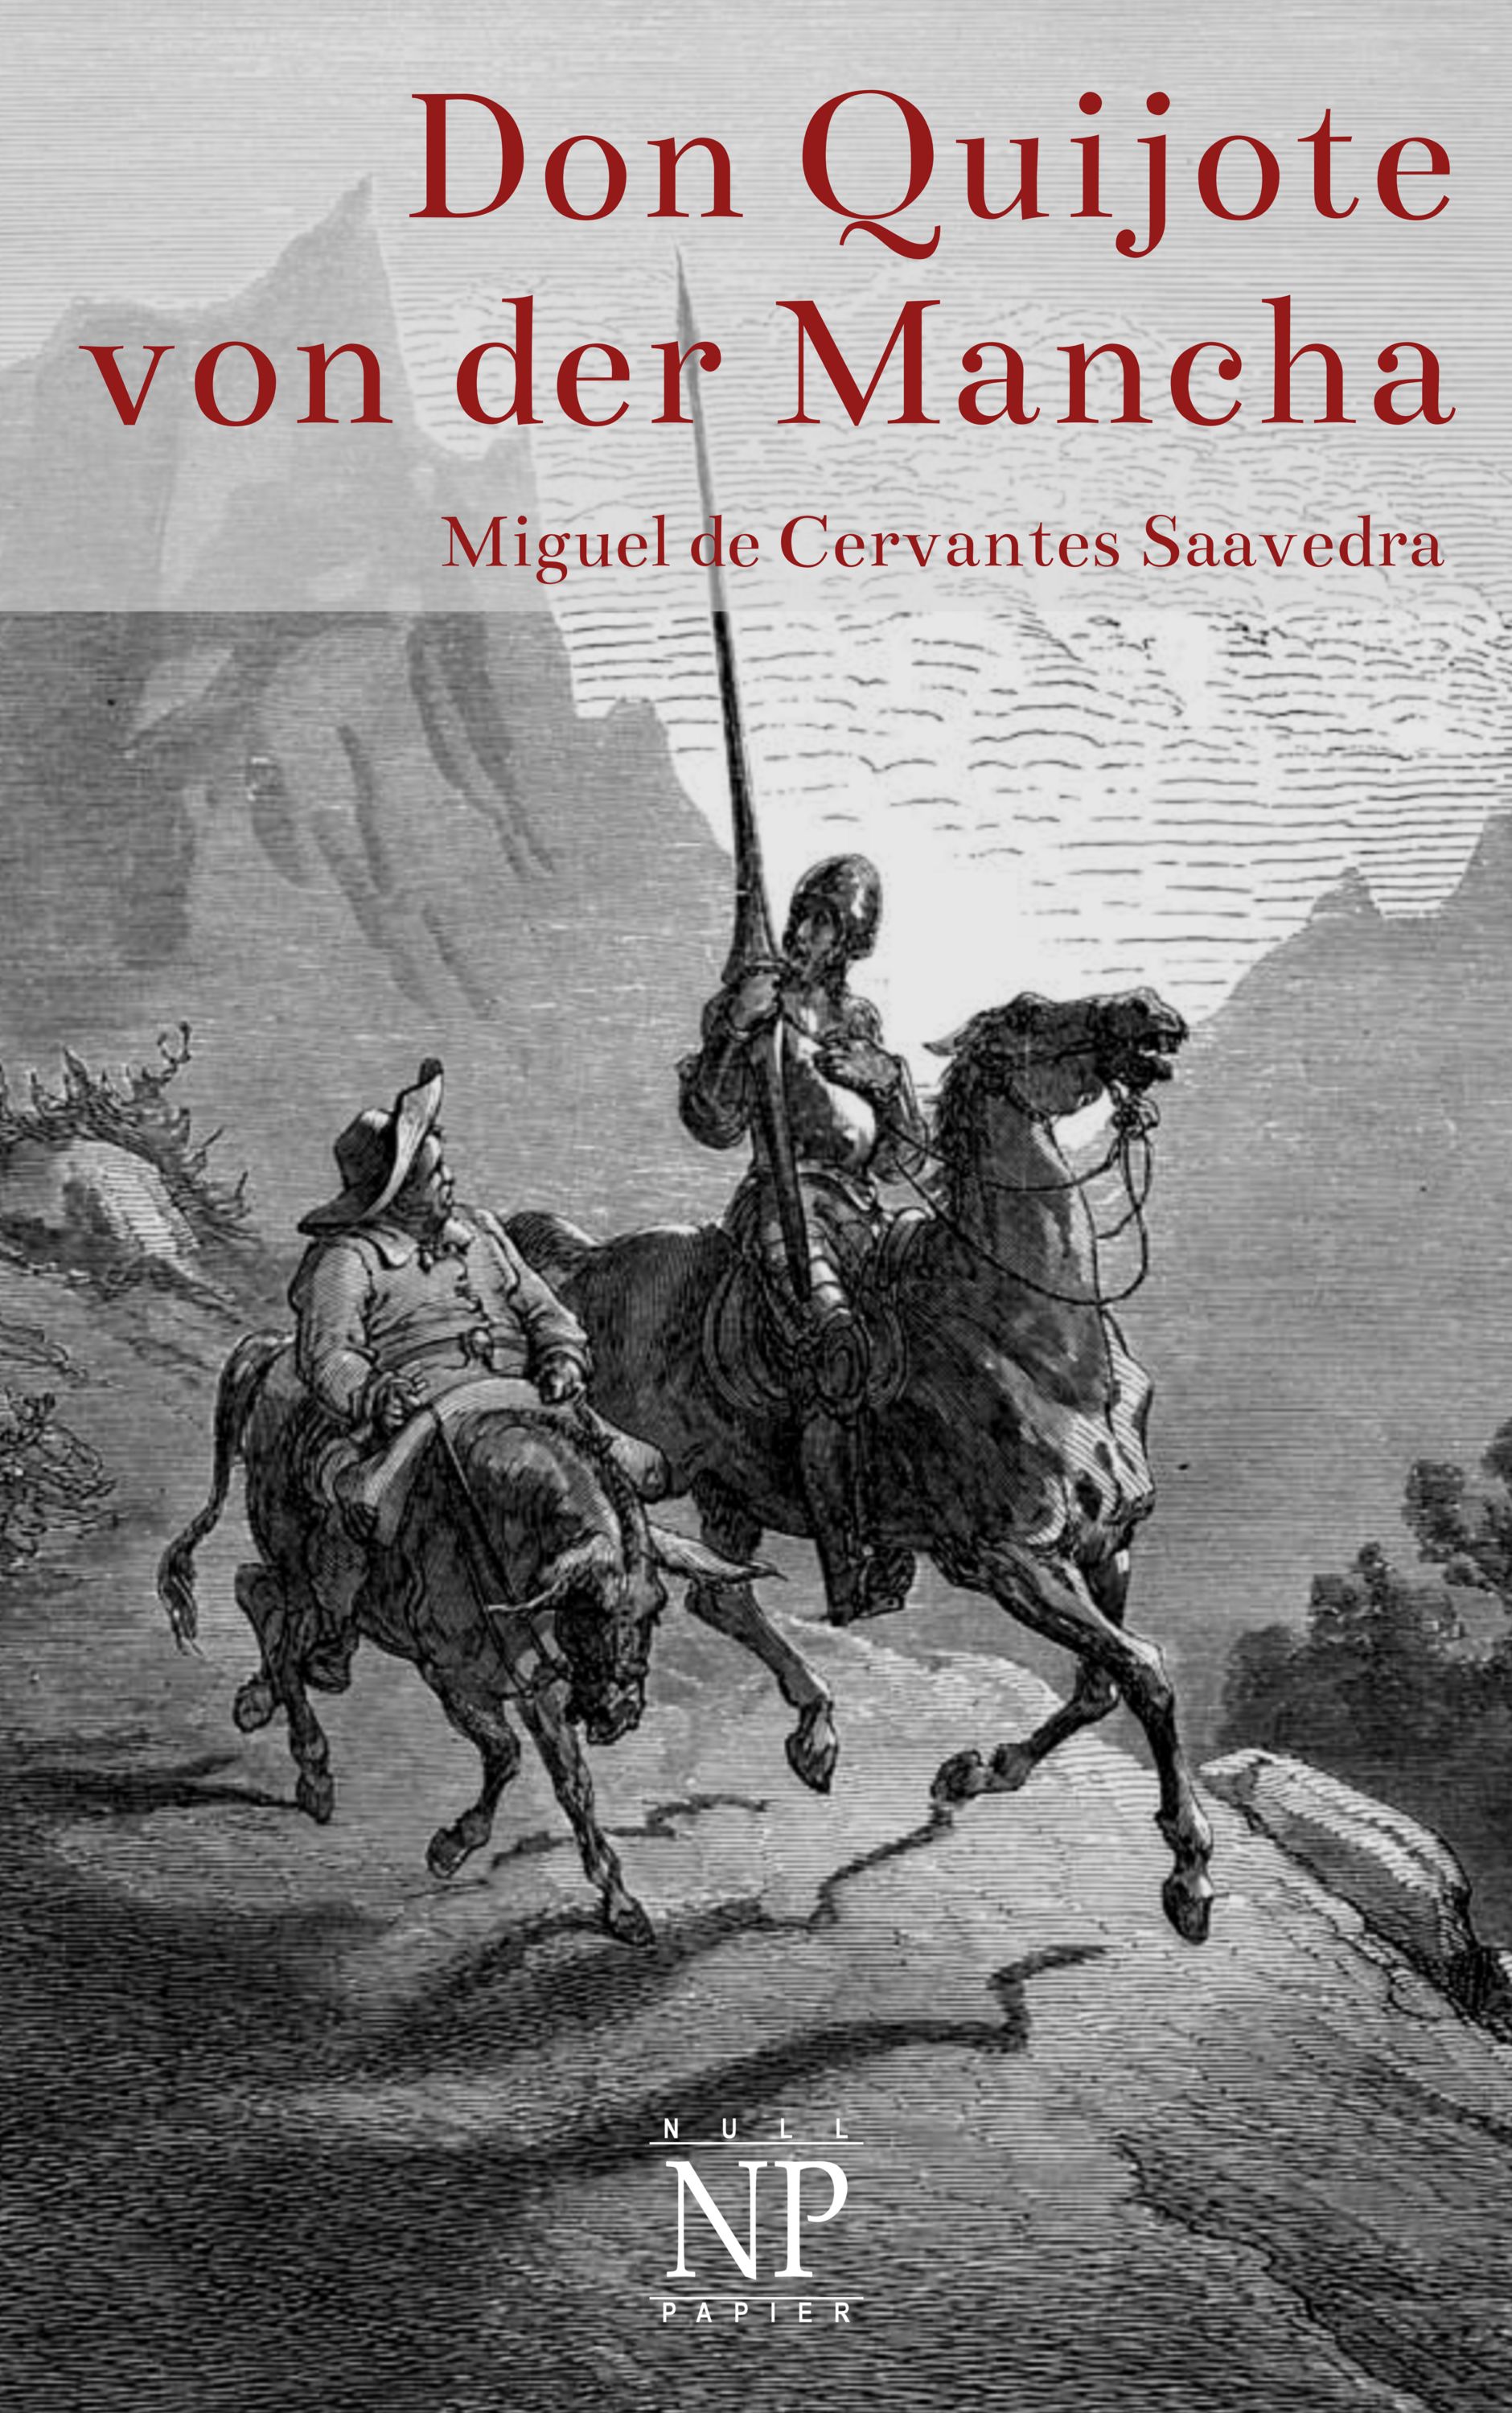 Don Quijote von der Mancha - Illustrierte Fassung